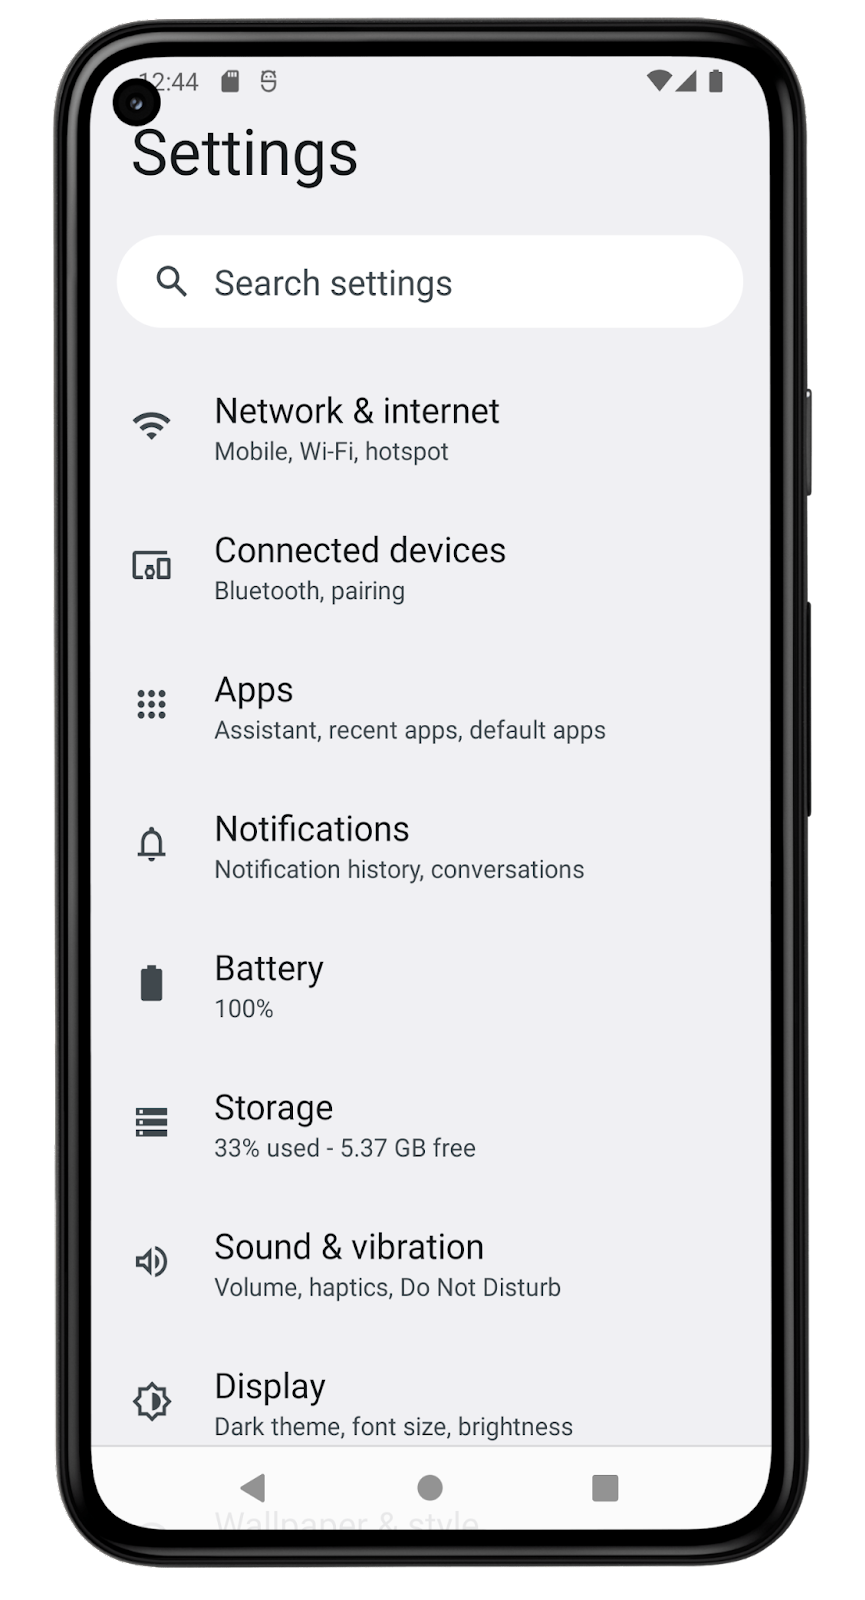 설정 앱의 스크린샷은 기기의 설정을 변경하는 다양한 메뉴 옵션을 보여줍니다. 화면에 표시되는 메뉴 항목은 네트워크 및 인터넷, 연결된 기기, 앱, 알림, 배터리, 저장용량, 소리 및 진동, 디스플레이입니다. 